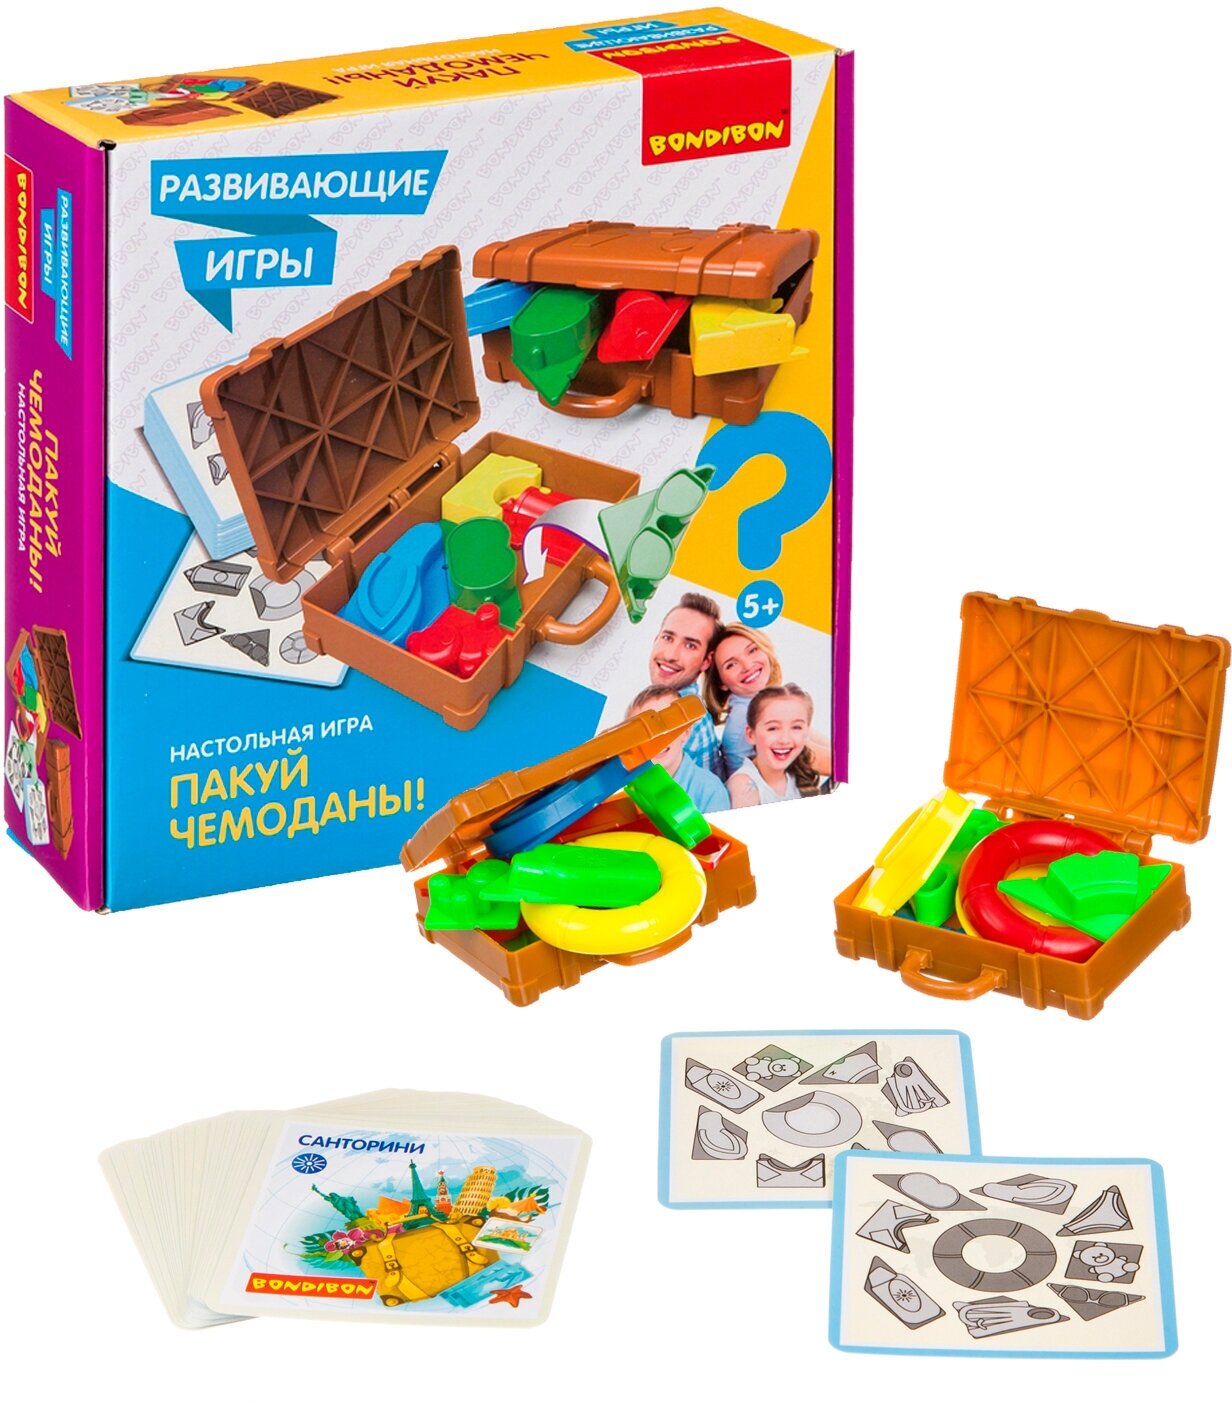 Развивающая настольная игра пакуй чемоданы Bondibon сортер игрушка Монтессори для детей от 5 лет / Обучающая игра для двоих, для компании